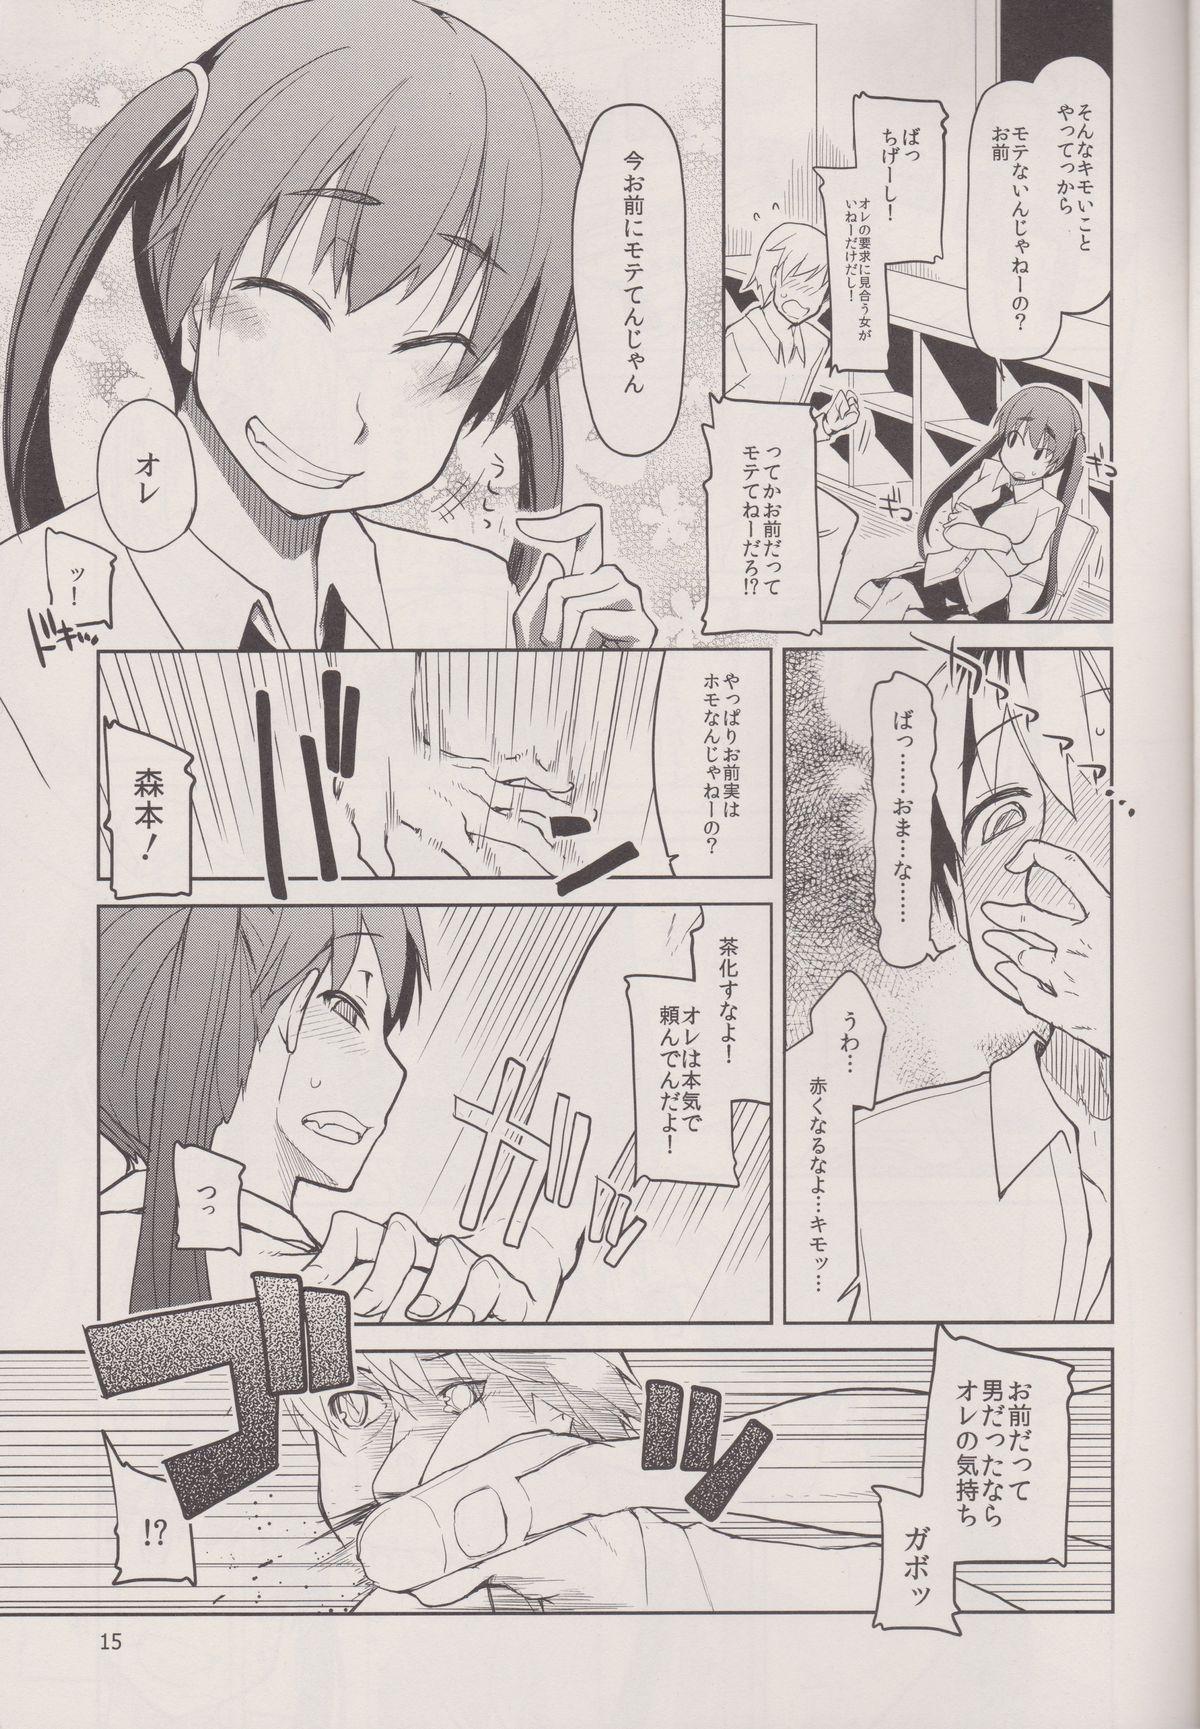 Natsuzuka san no Himitsu. Vol.3 Makuai Hen 16